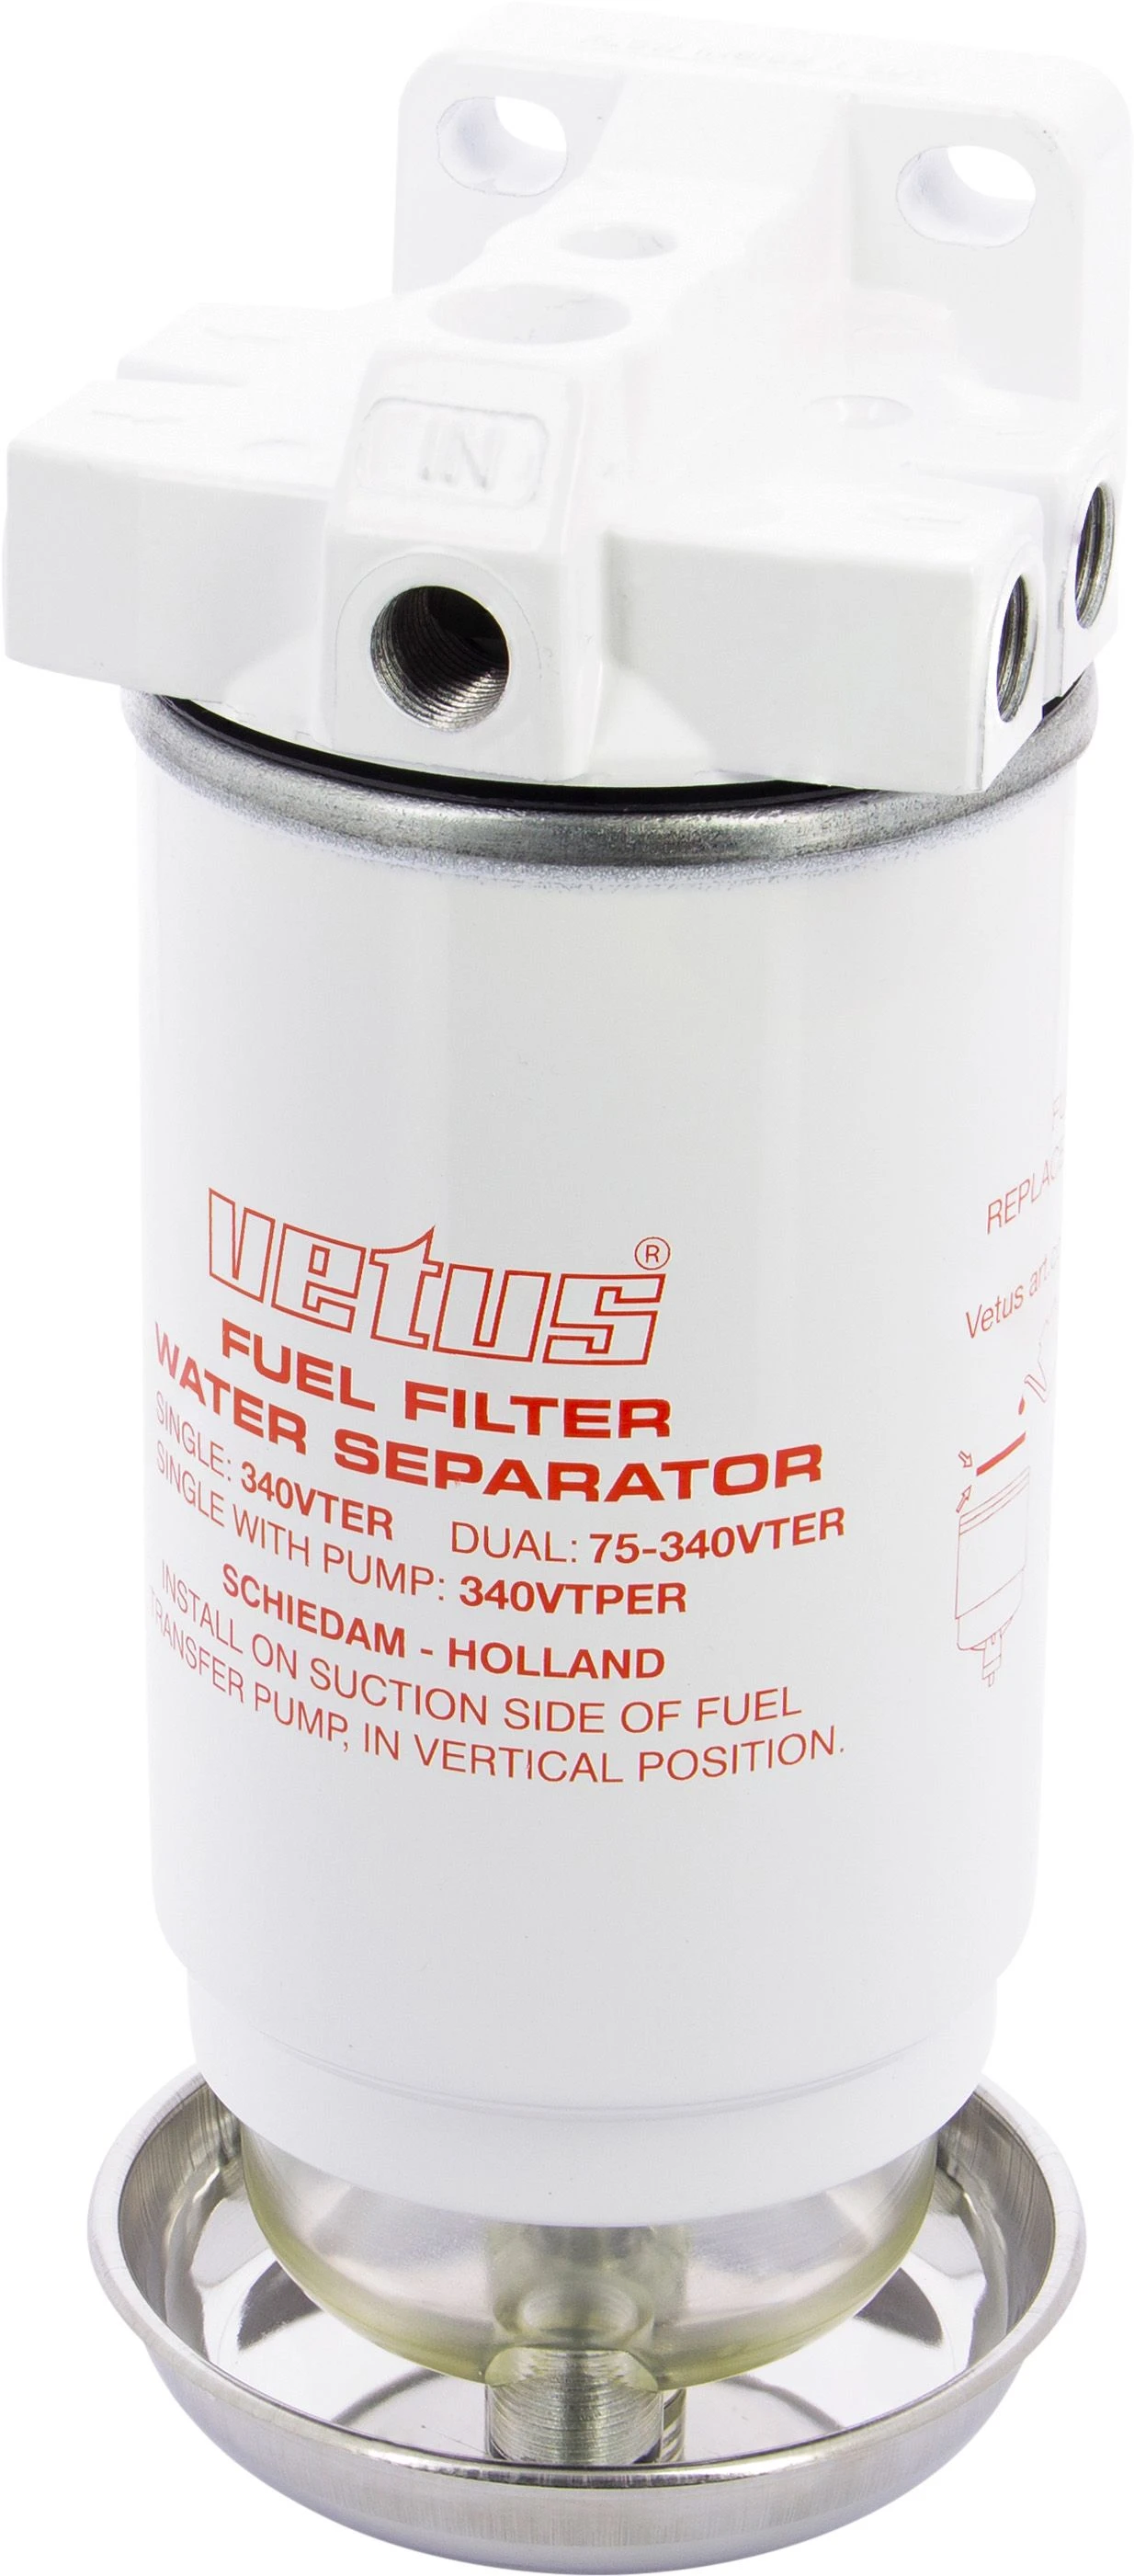 Water afscheider/diesel filter